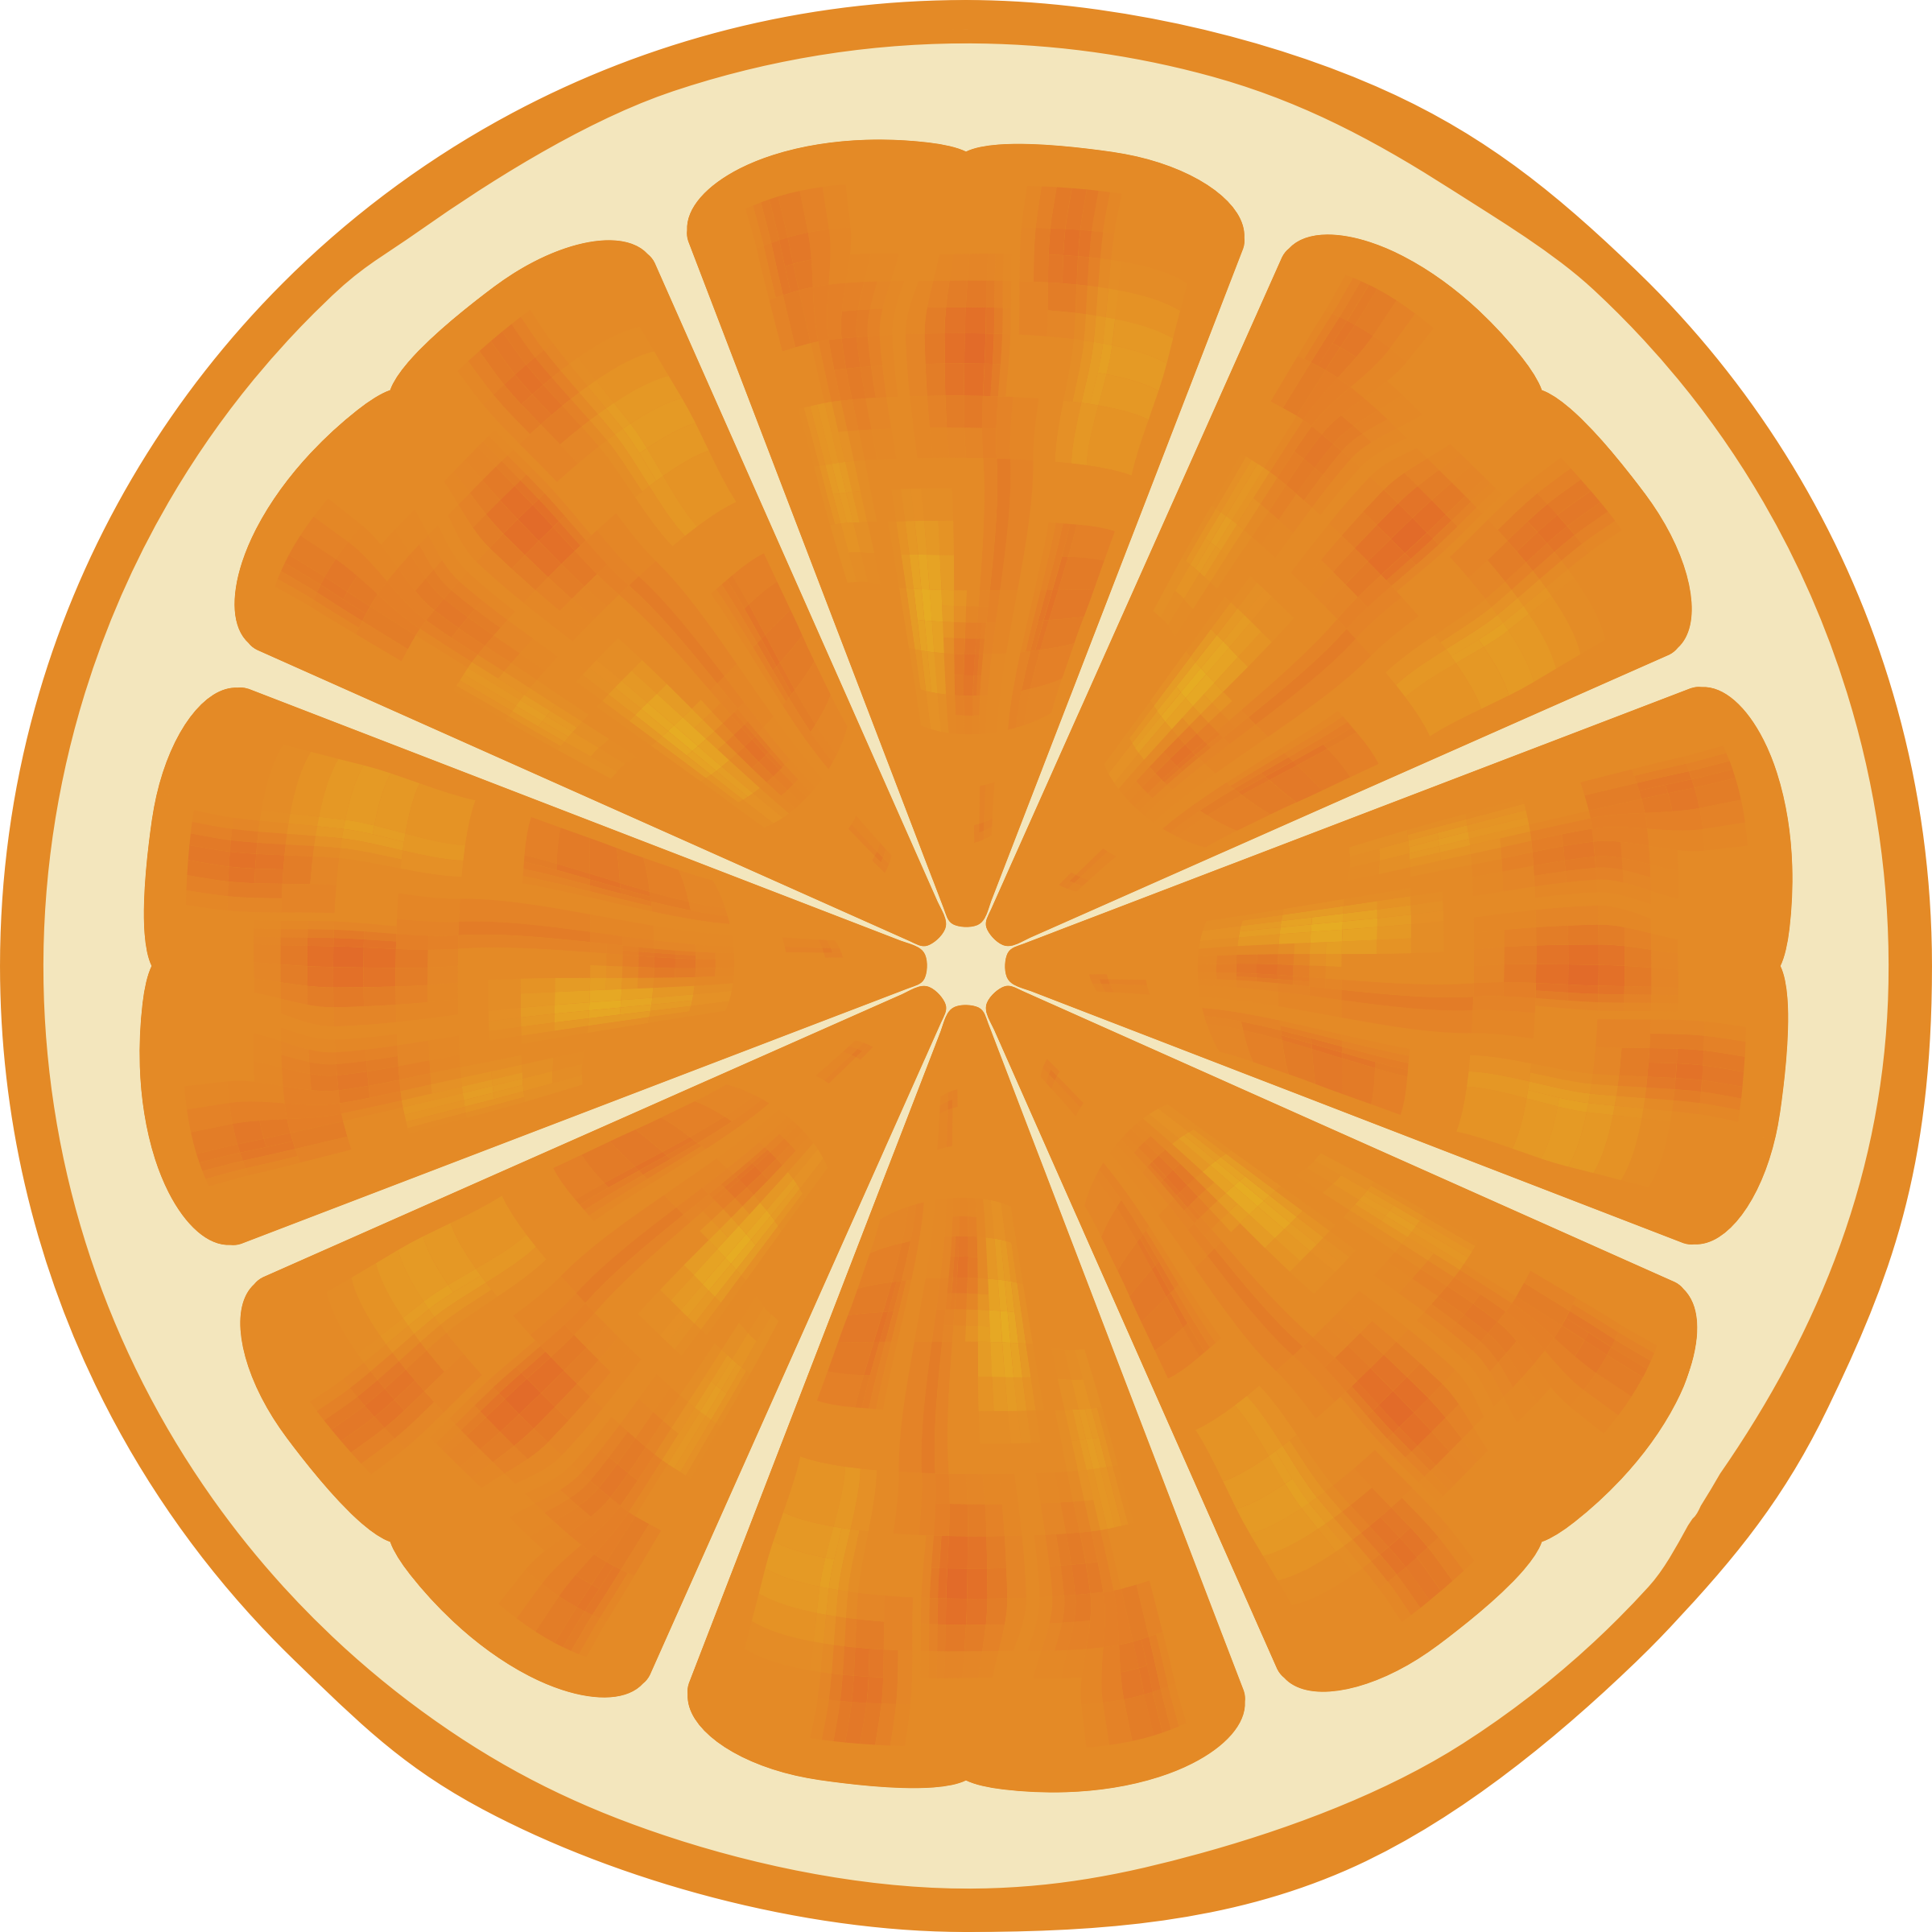 Big Image - Clip Art Orange Slice (2400x2400)